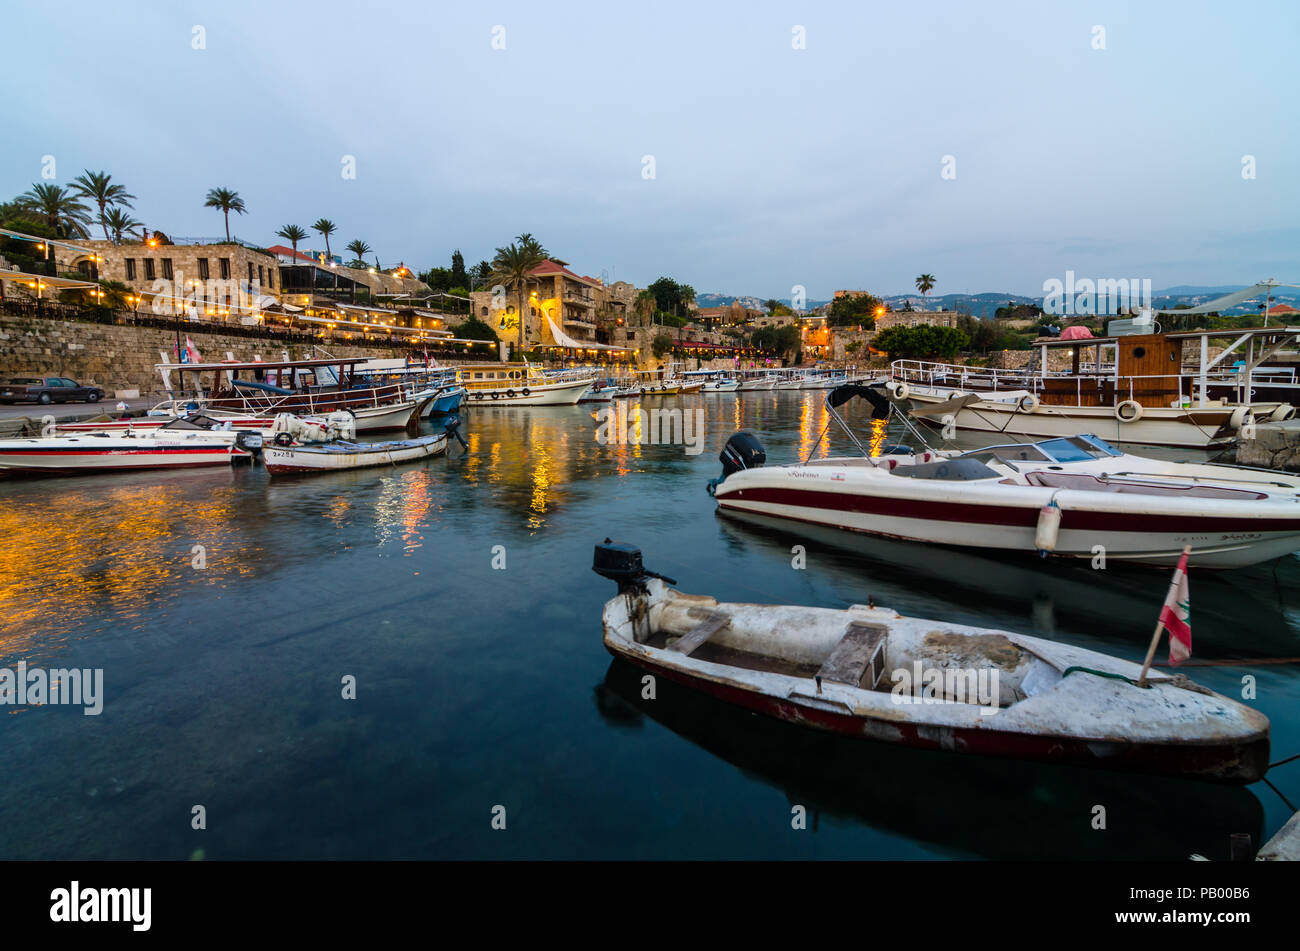 Bateaux de pêche dans la région de Jbeil Byblos vieux port, port, au crépuscule, au Liban Banque D'Images